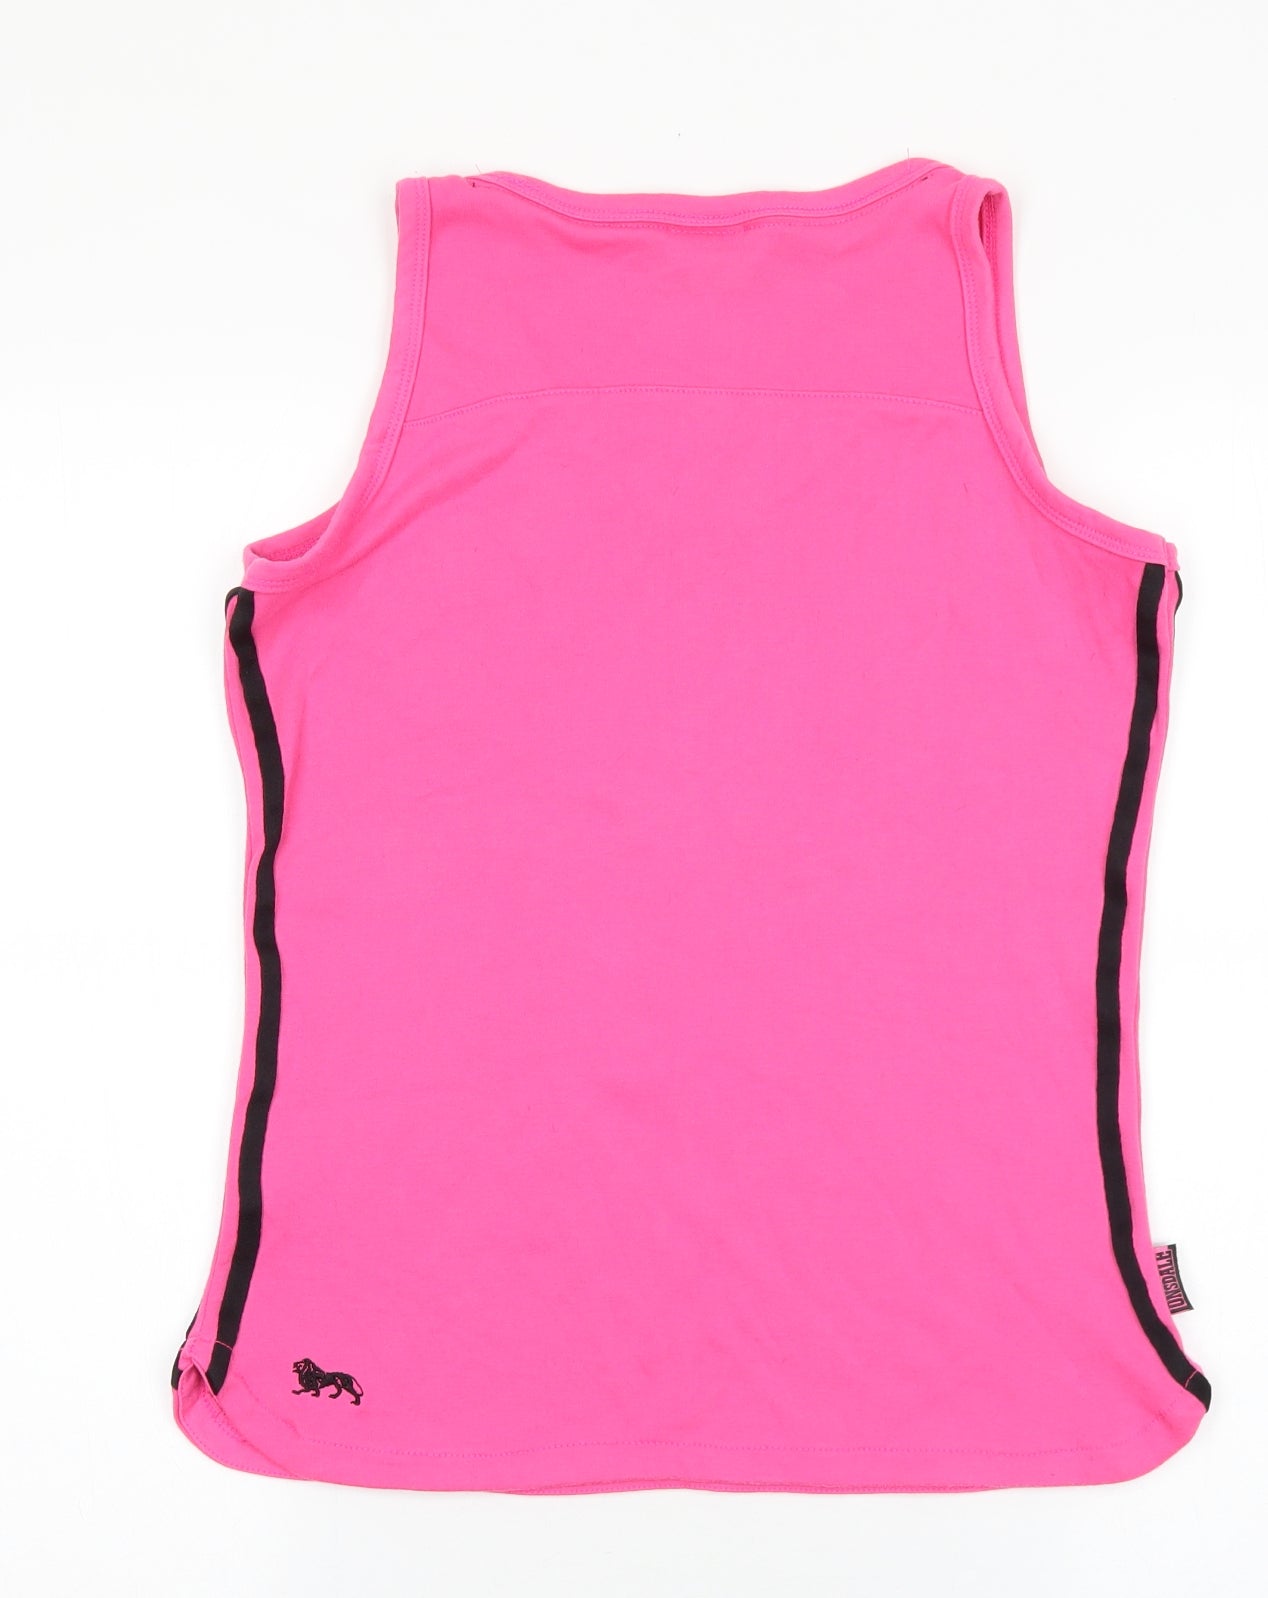 Lonsdale Womens Pink Polyester Basic Tank Size 14 V-Neck